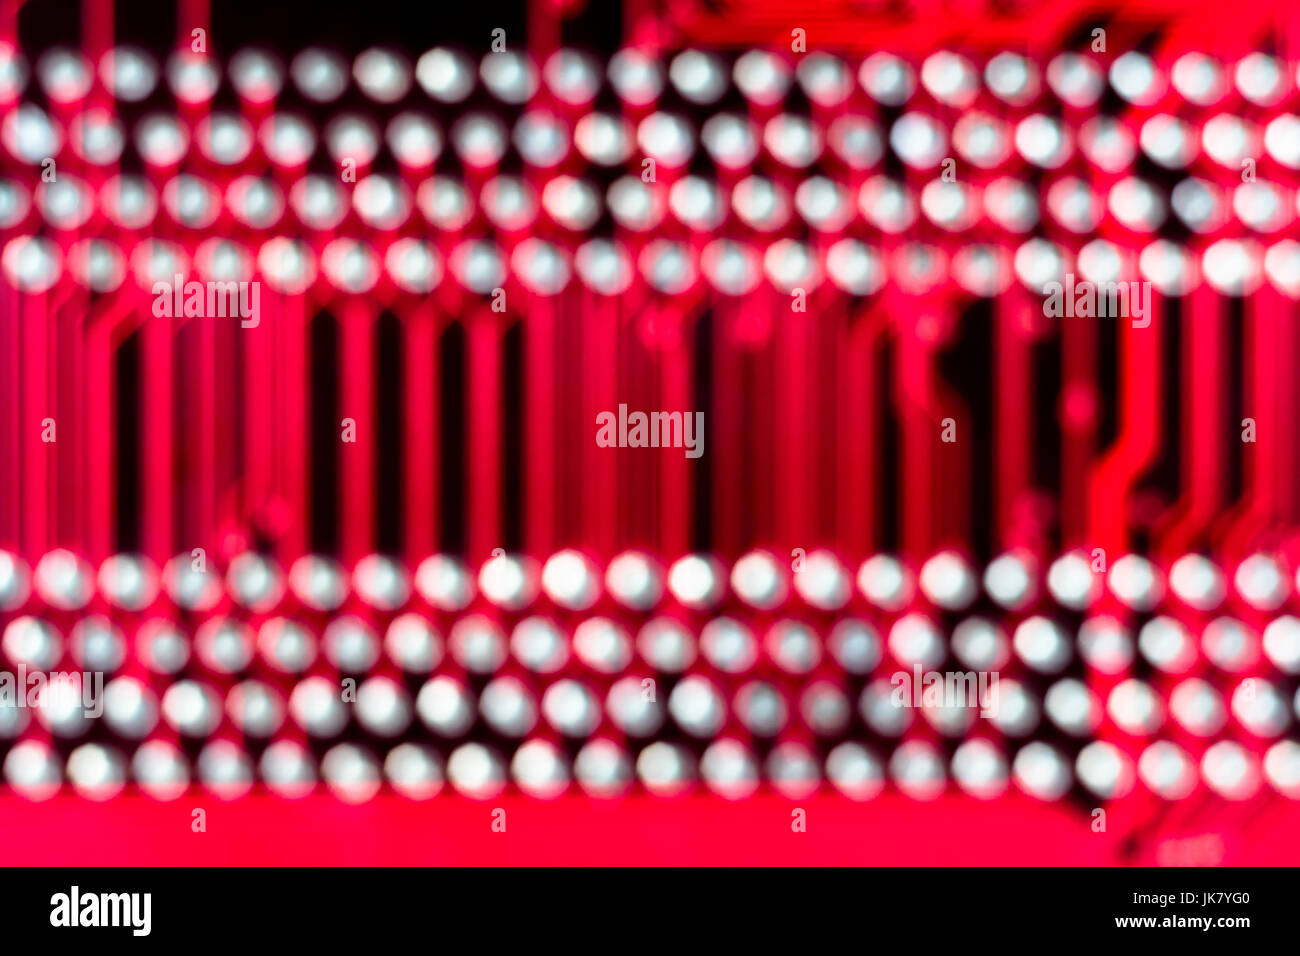 Abstrakt: Verdrehte Aufnahme der Steckerspuren auf einer roten Leiterplatte. Abstrakte Punkte. Stockfoto